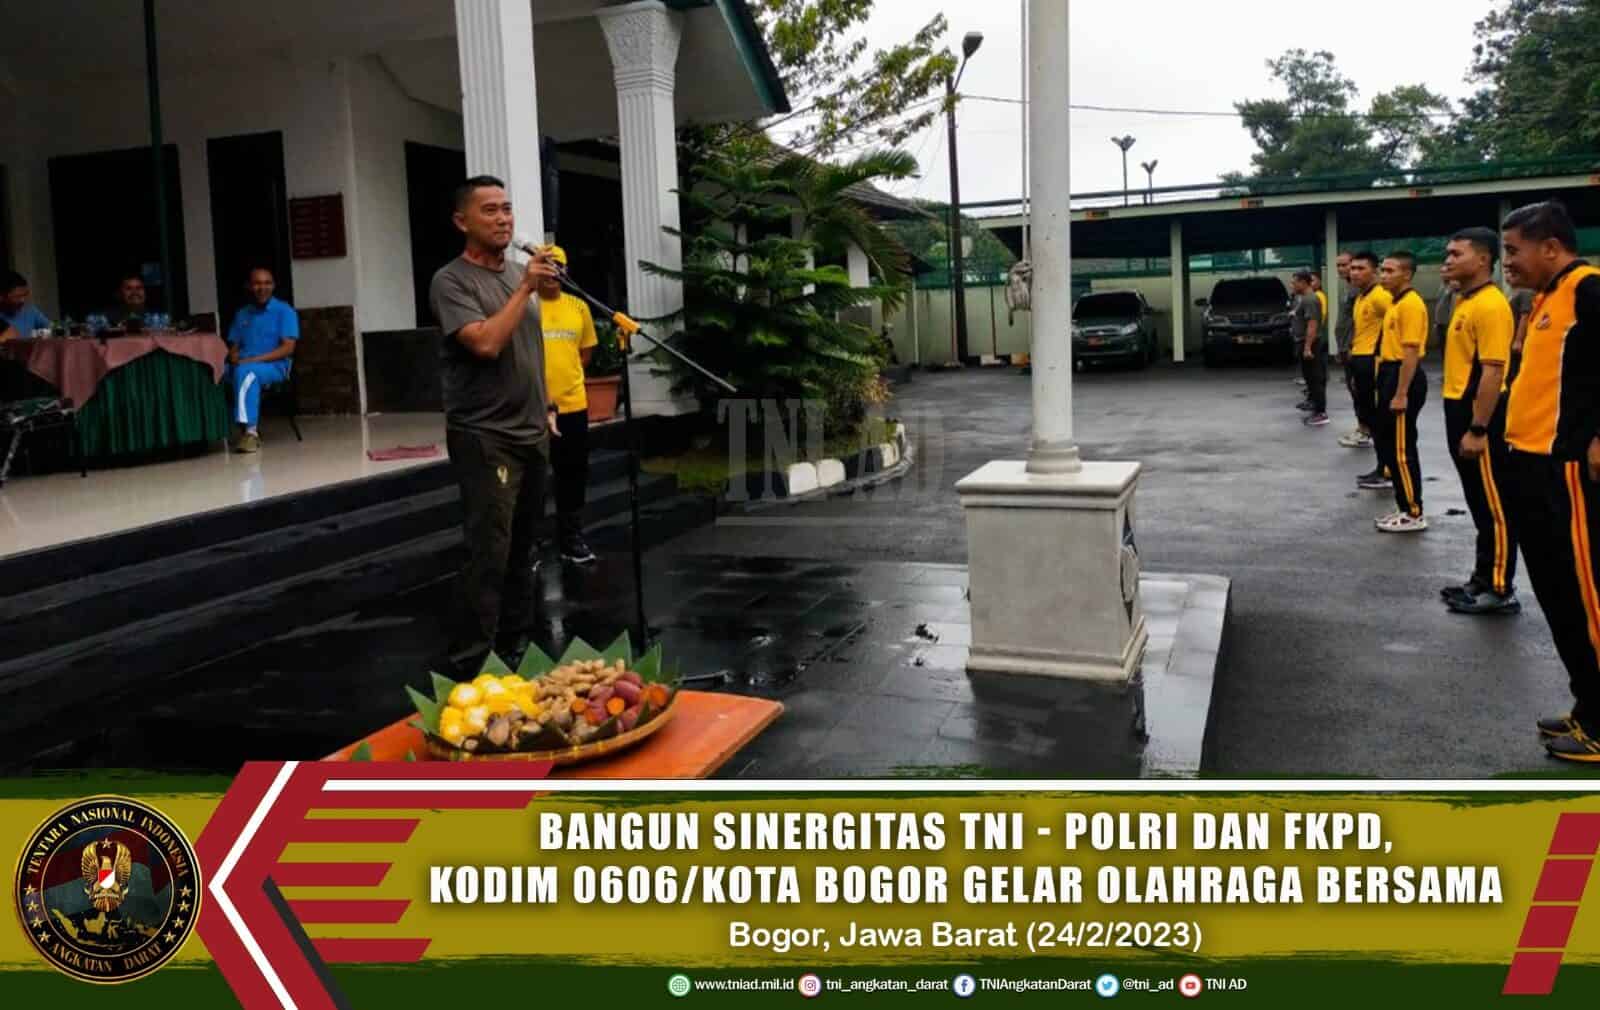 Bangun Sinergitas TNI – Polri dan FKPD, Kodim 0606/Kota Bogor Gelar Olahraga Bersama